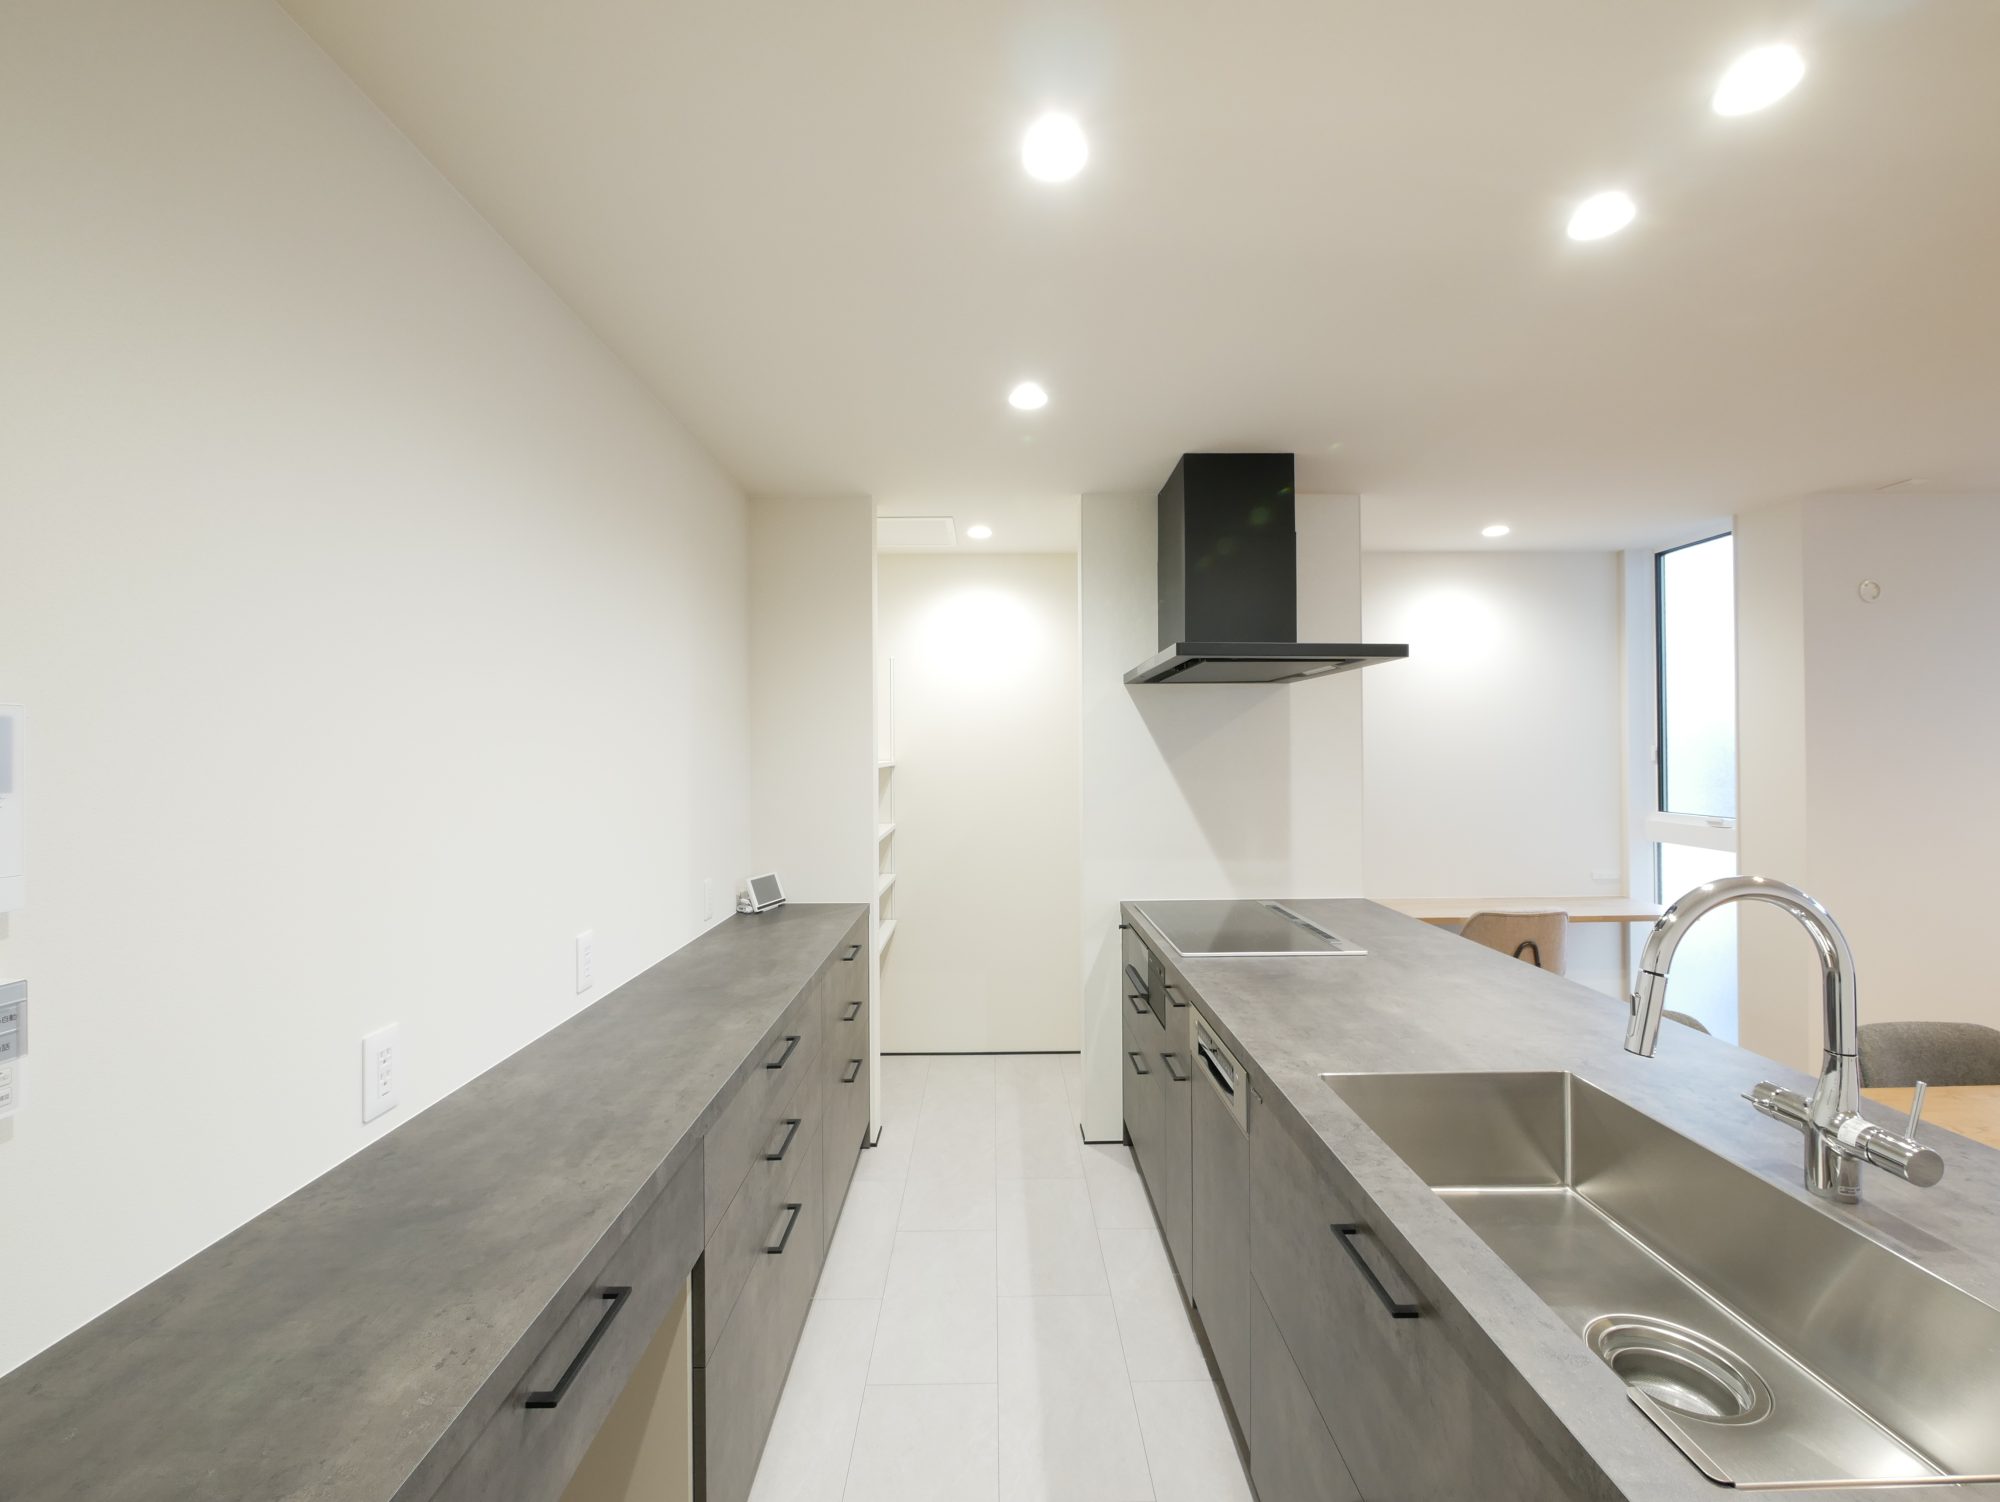 ハウスクラフトのセレクト住宅Rasiaで完成した新築住宅のキッチン 明るい白壁とグレーのキッチン